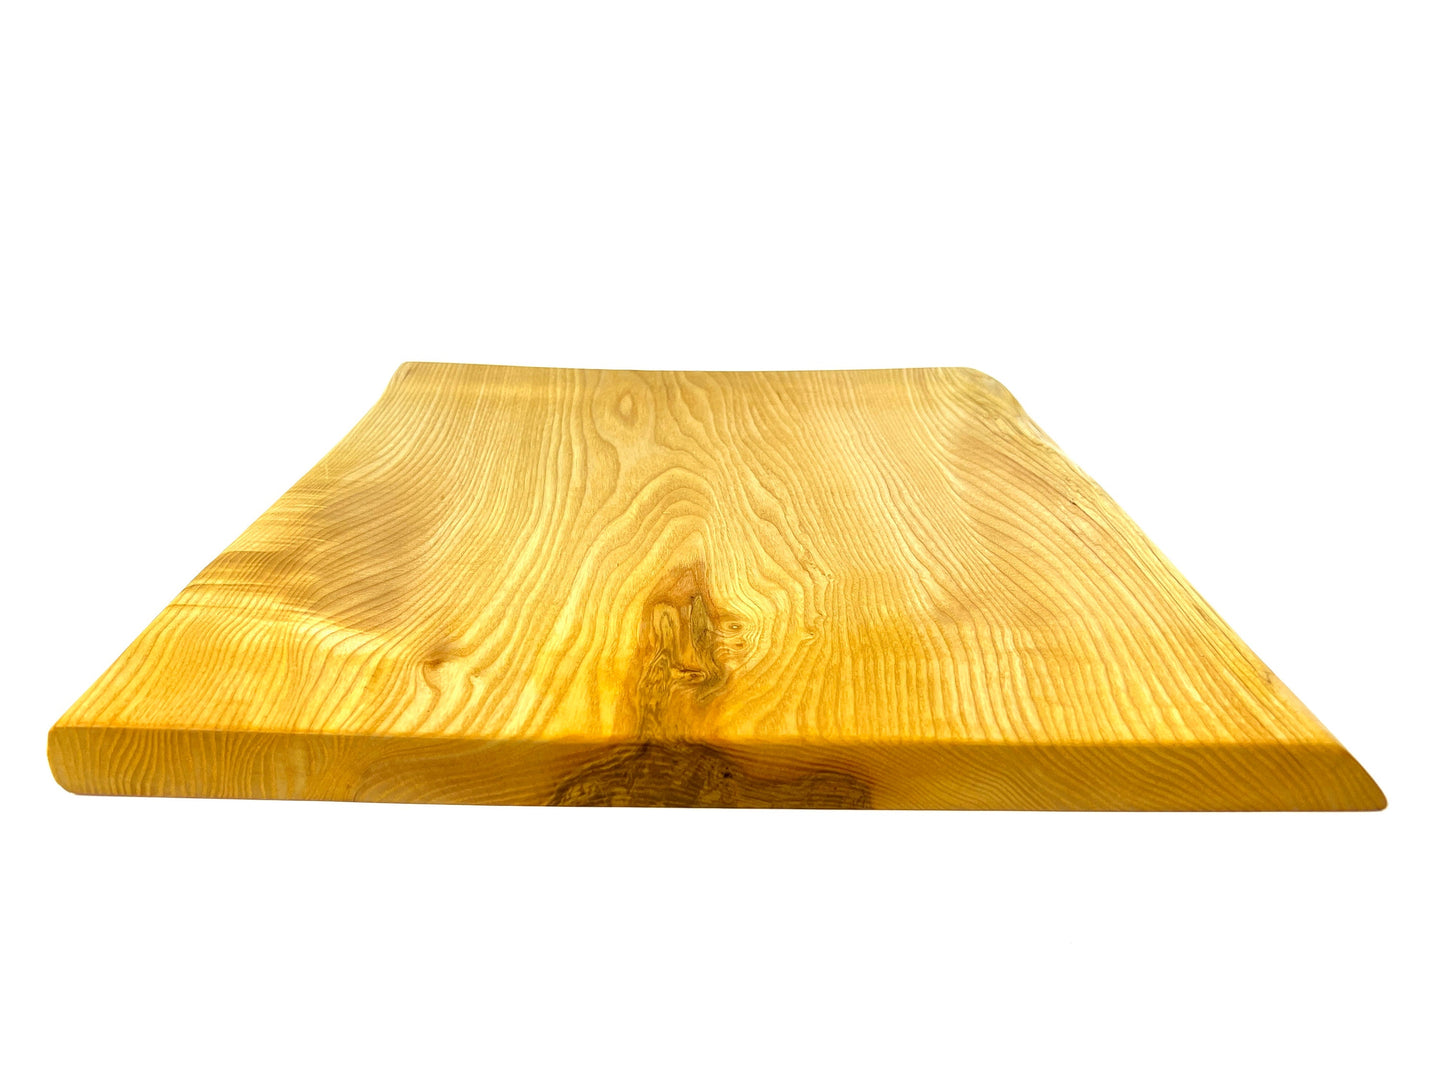 Ash 41 x 40cm cutting board